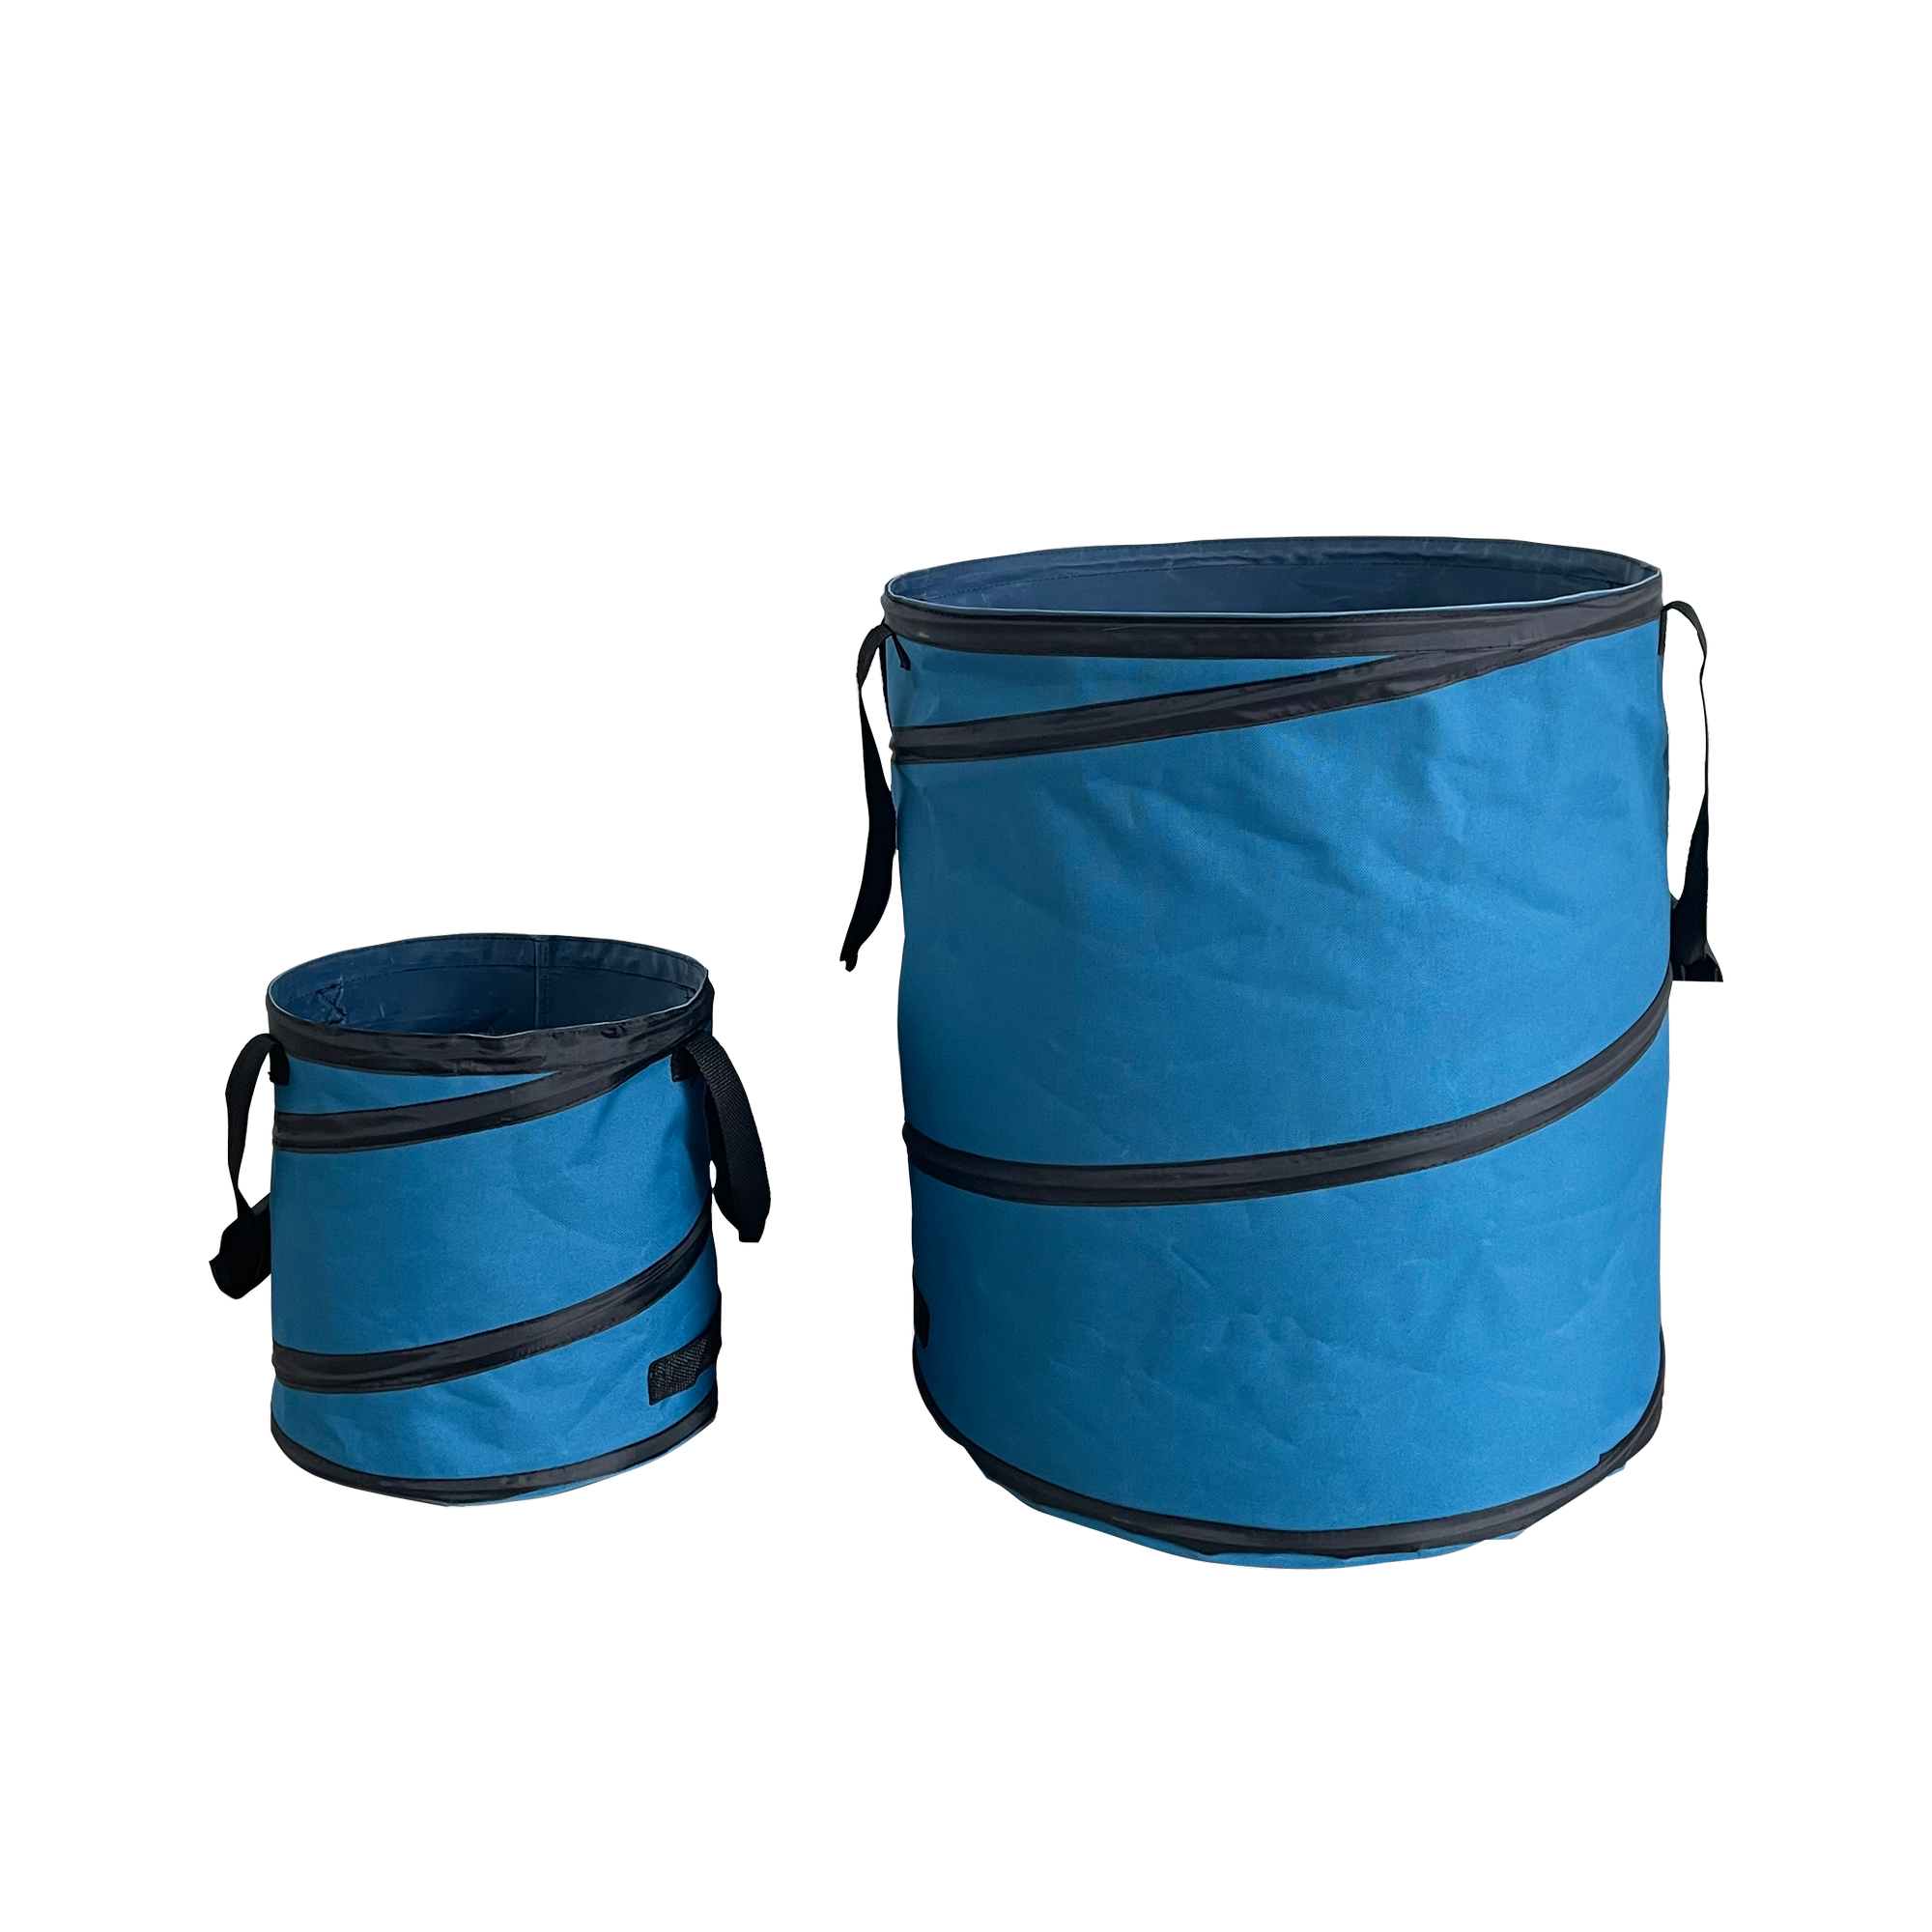 PopUp-Gartenabfallsack-Set blau 15 l und 85 l, 2-teilig + product picture